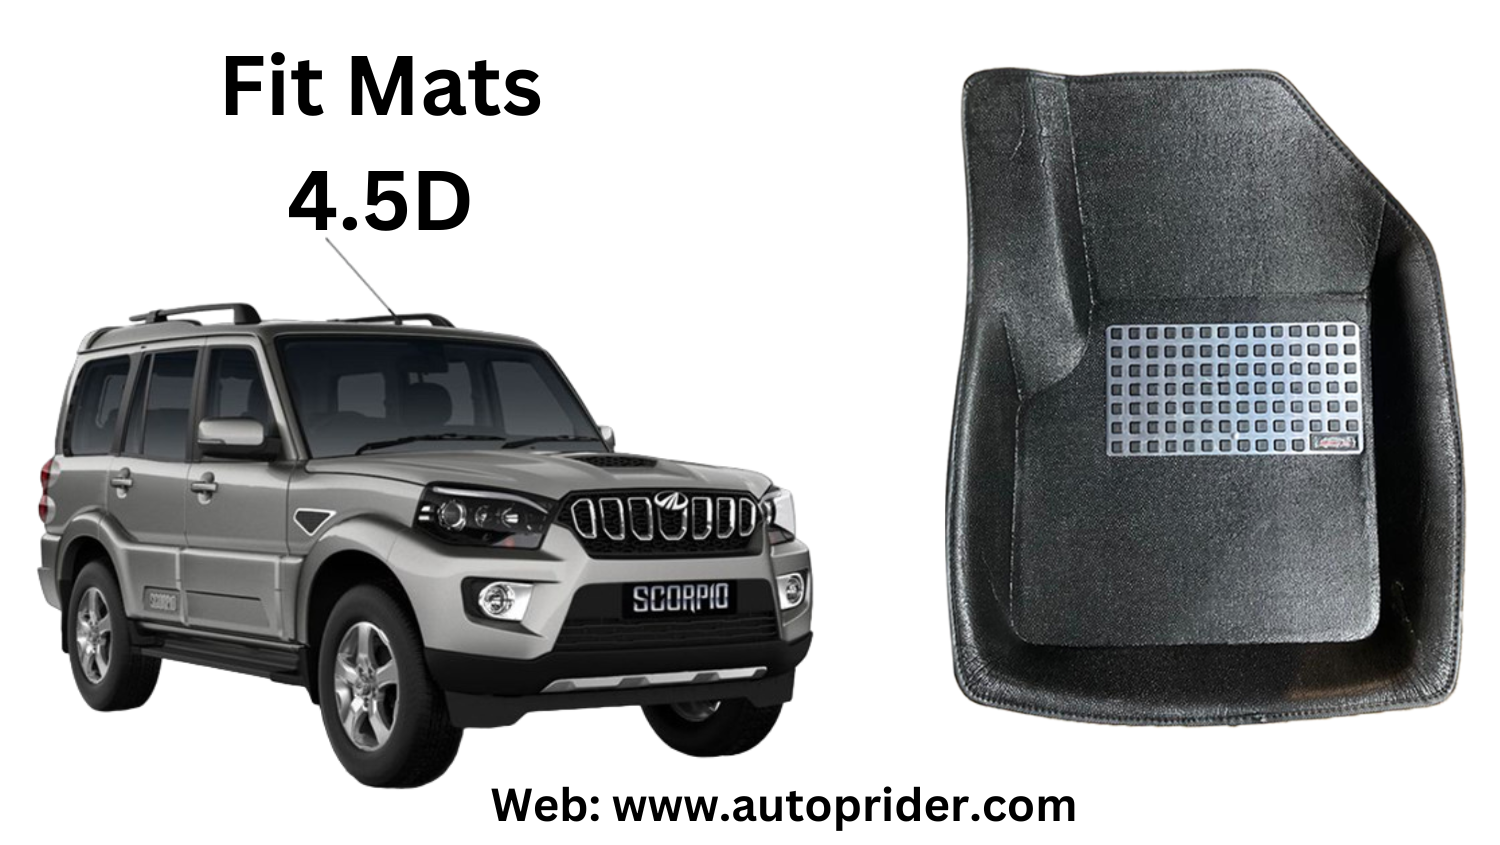 Autoprider | Fit Mats 4.5D Economy Car Mats for Mahindra Scorpio